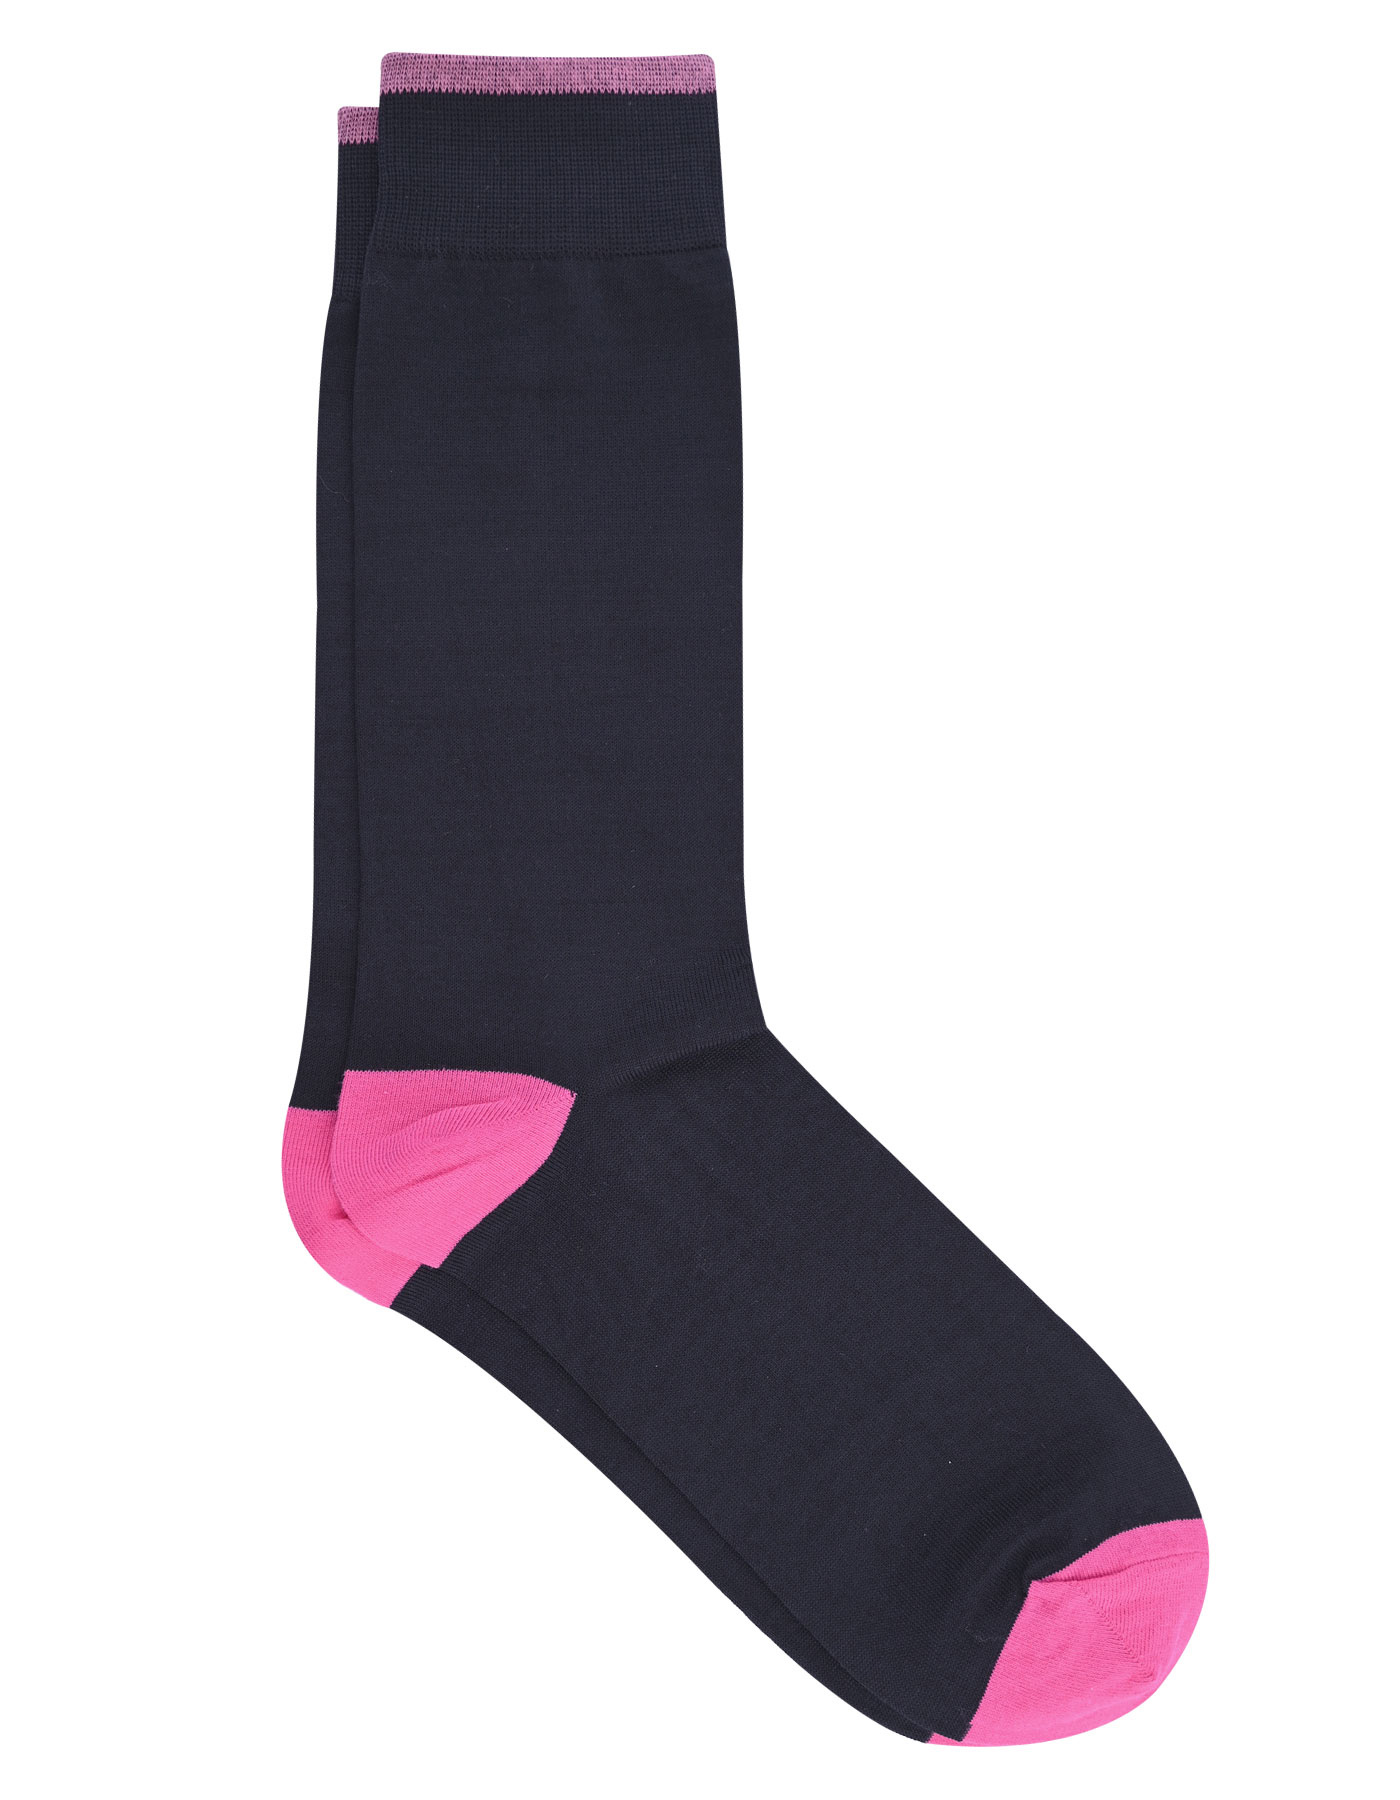 Black Pink Sock For Men